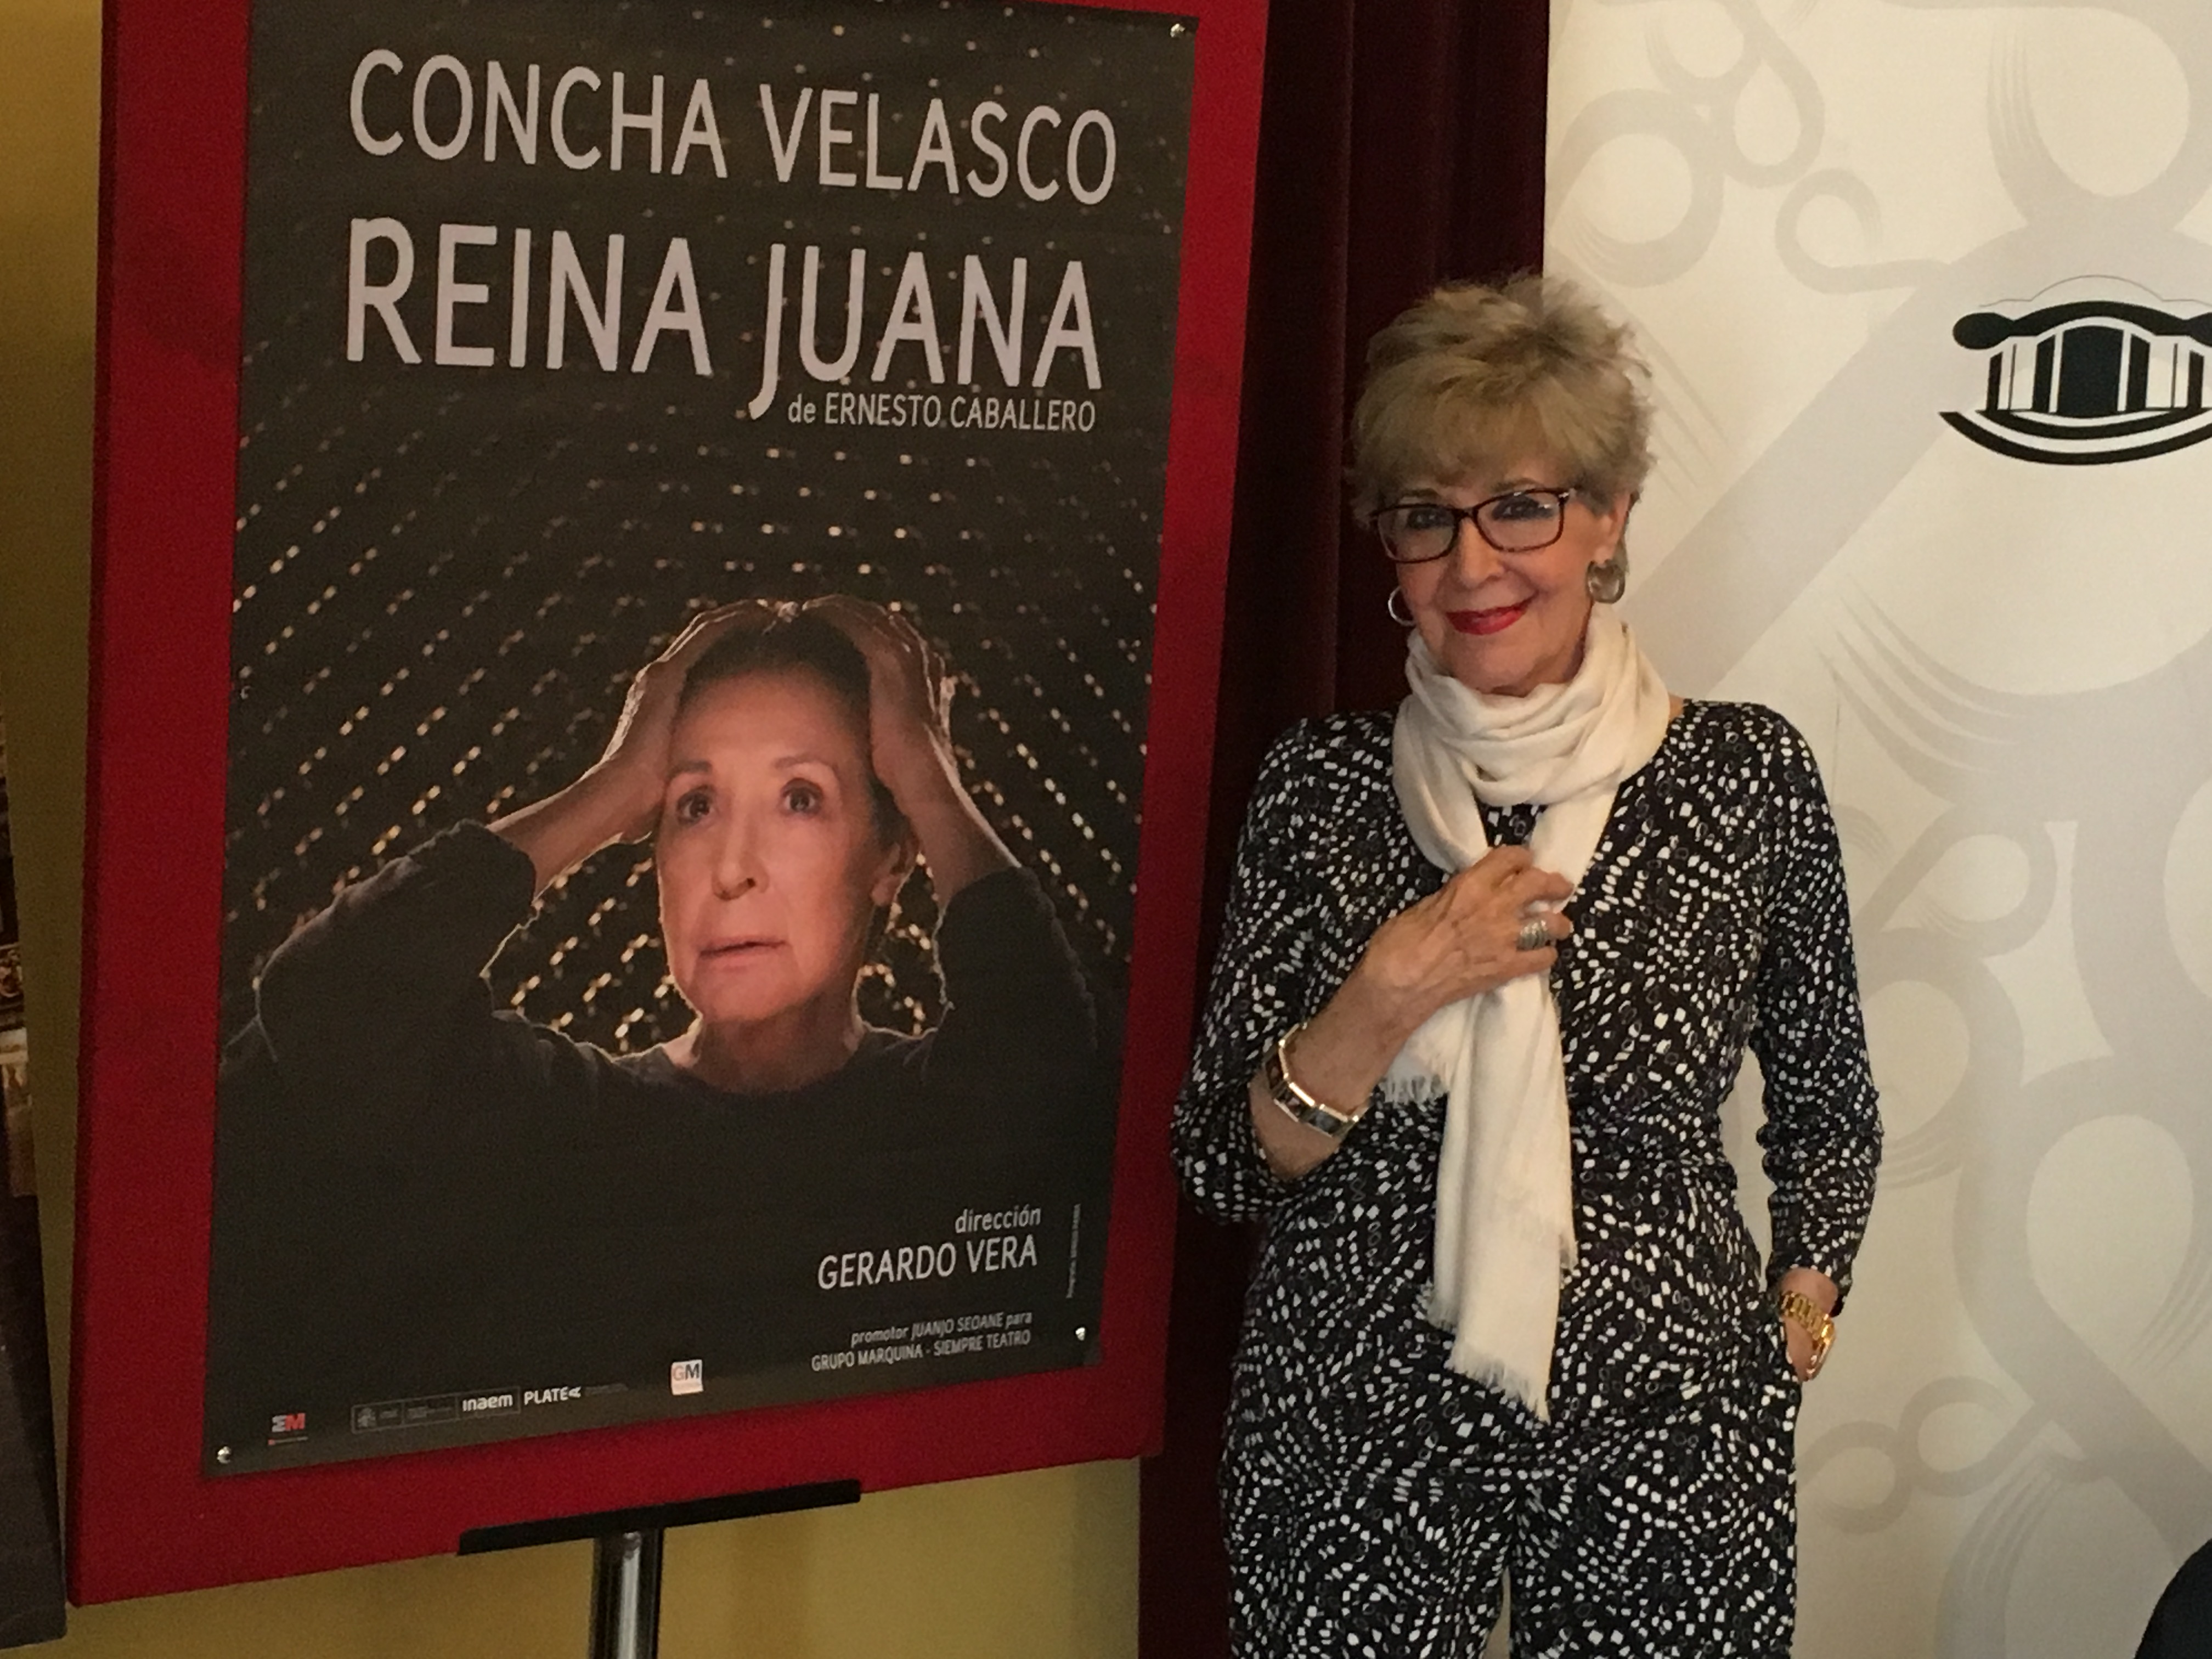 Concha Velasco, Premio Nacional de Teatro